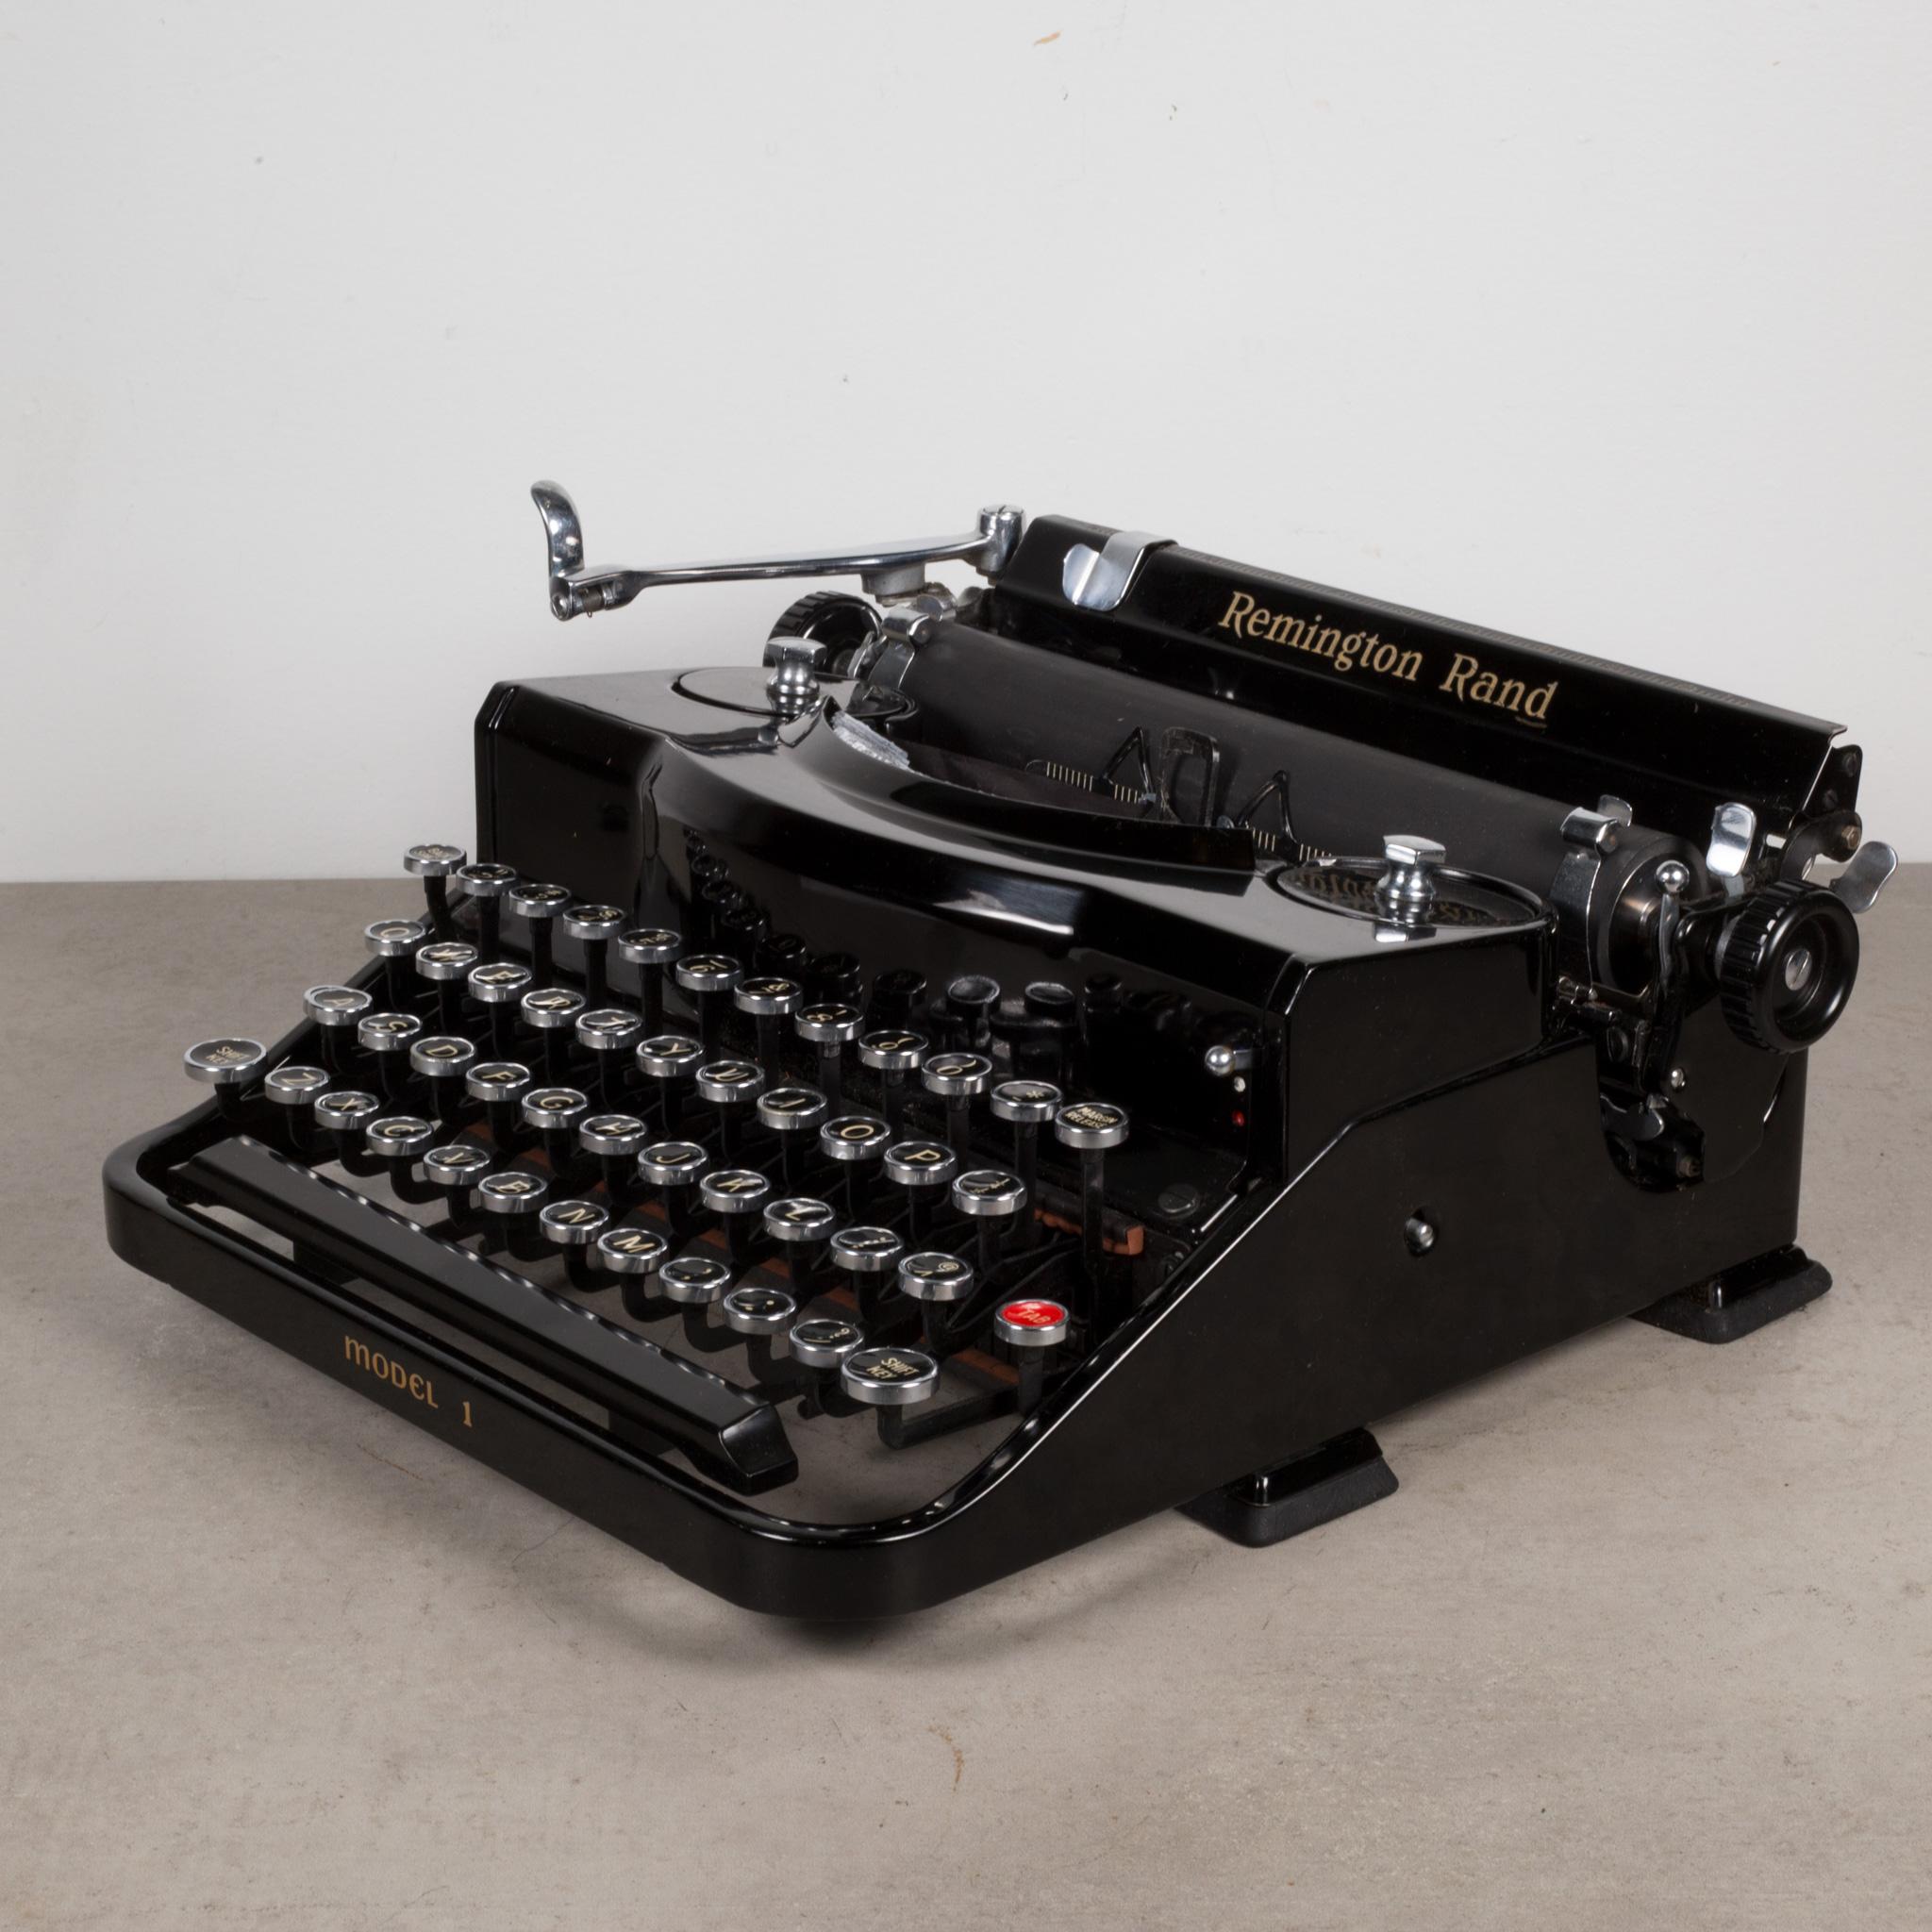 remington rand typewriter model 1